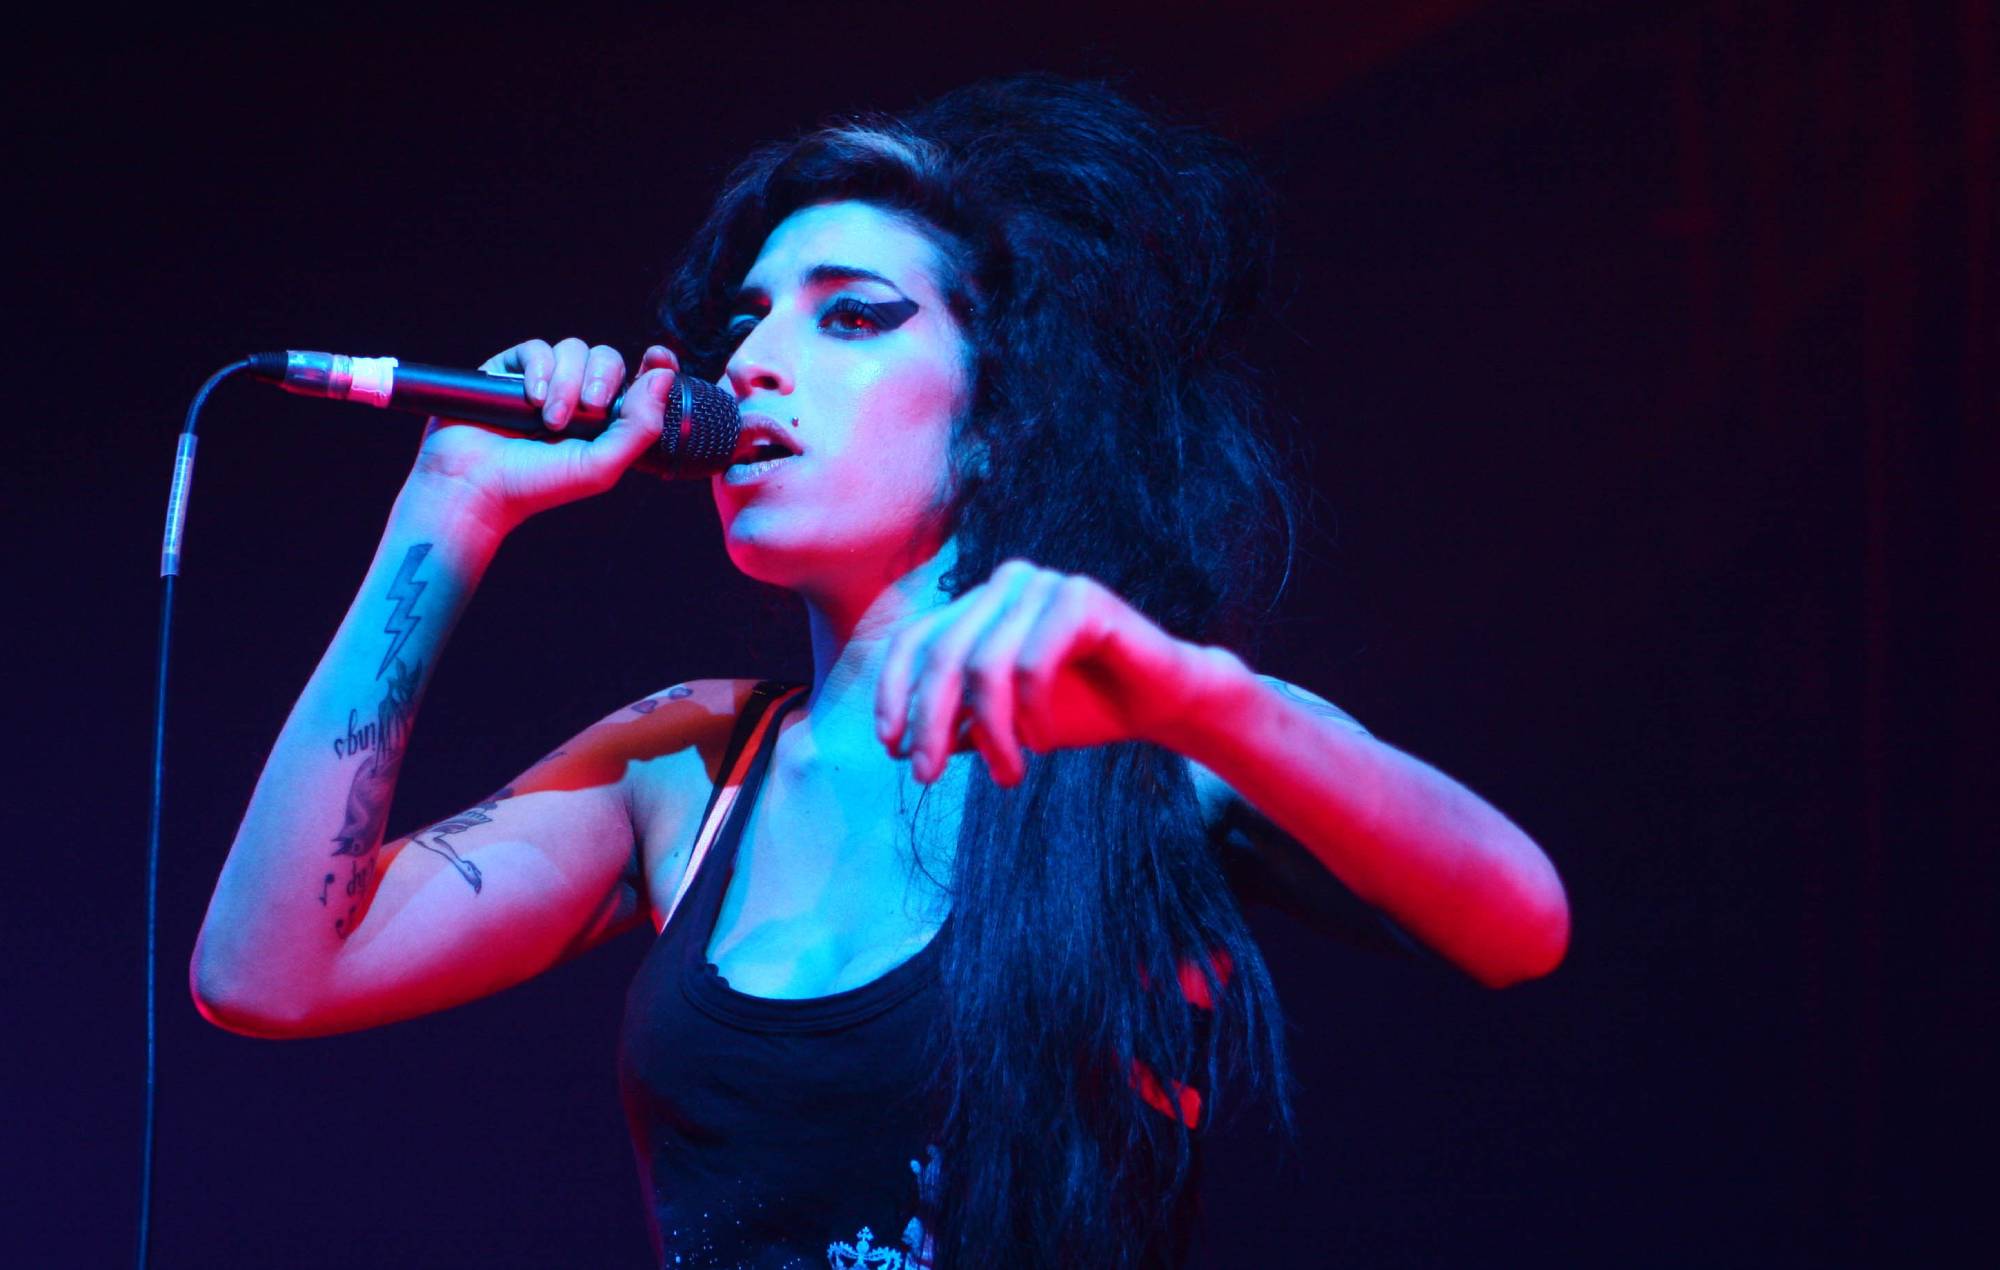 El padre de Amy Winehouse quiere que la cantante sea recordada por su "talento" antes del décimo aniversario de su muerte